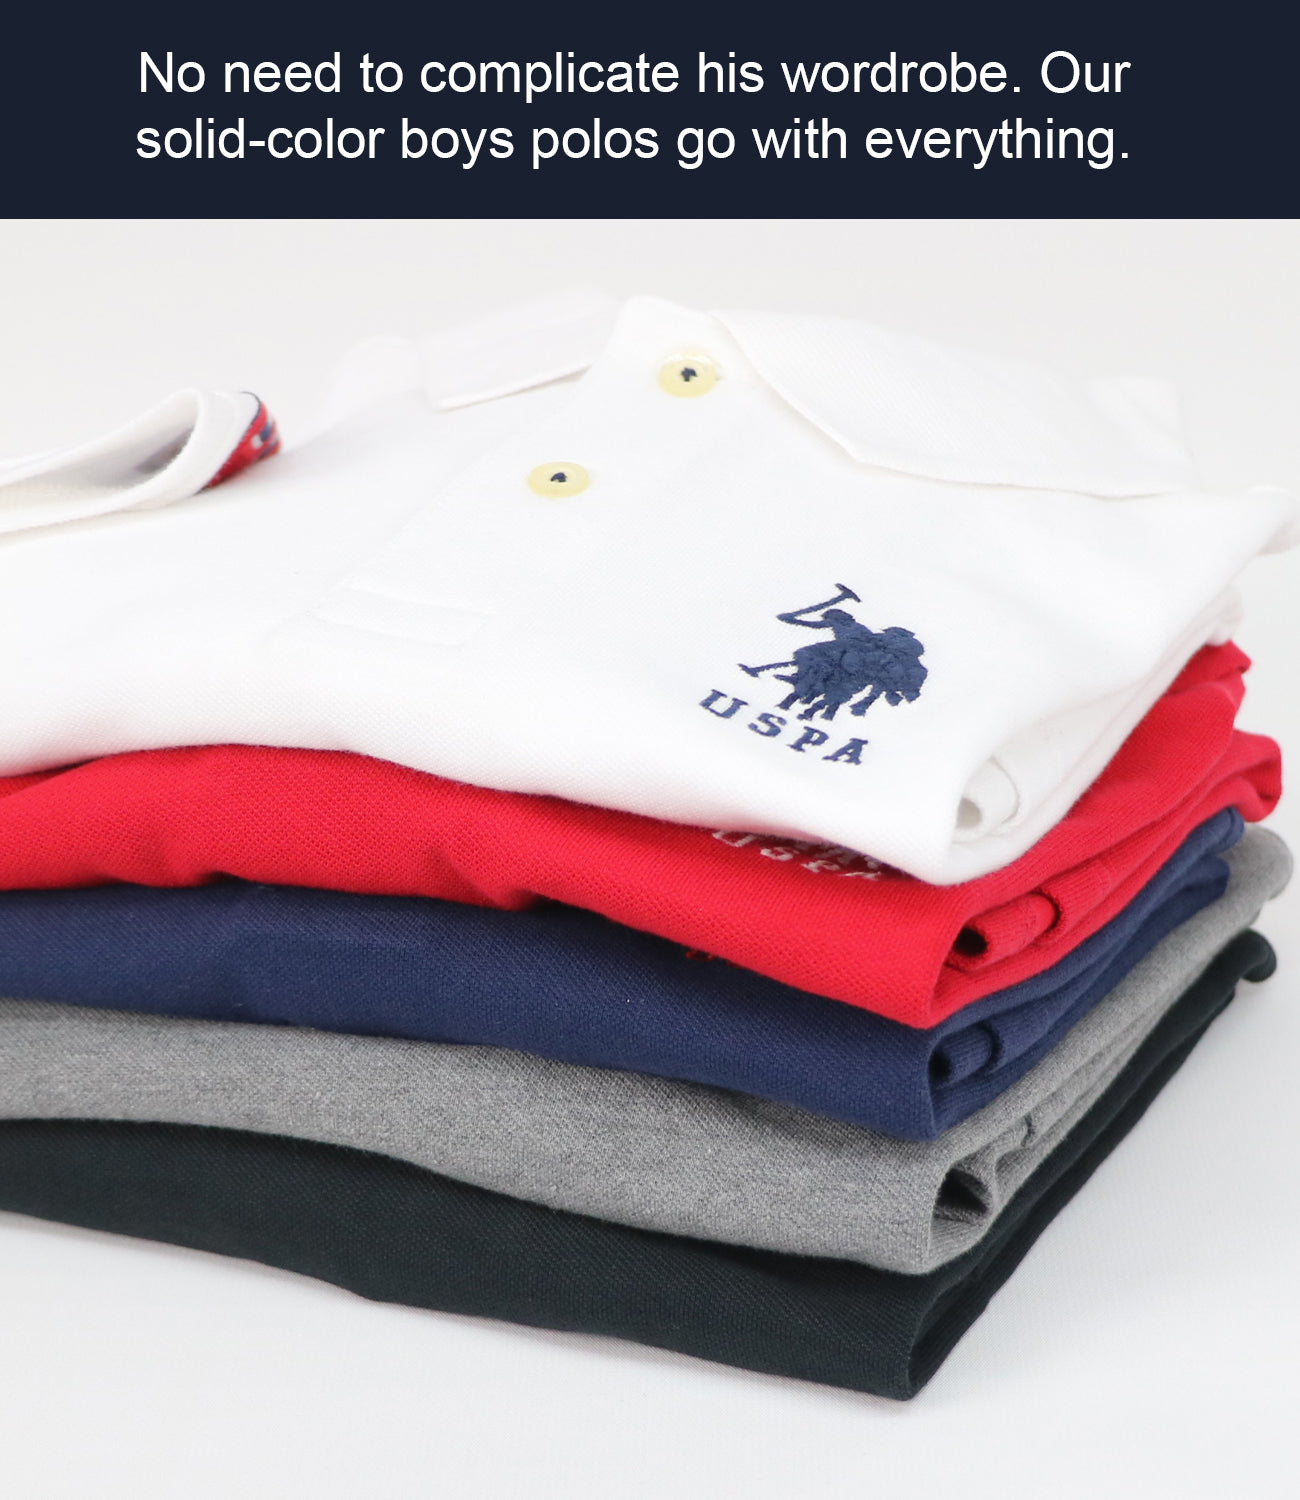 U.S. Polo Assn. Men's Solid Pique Polo Shirt, Classic Navy, Small